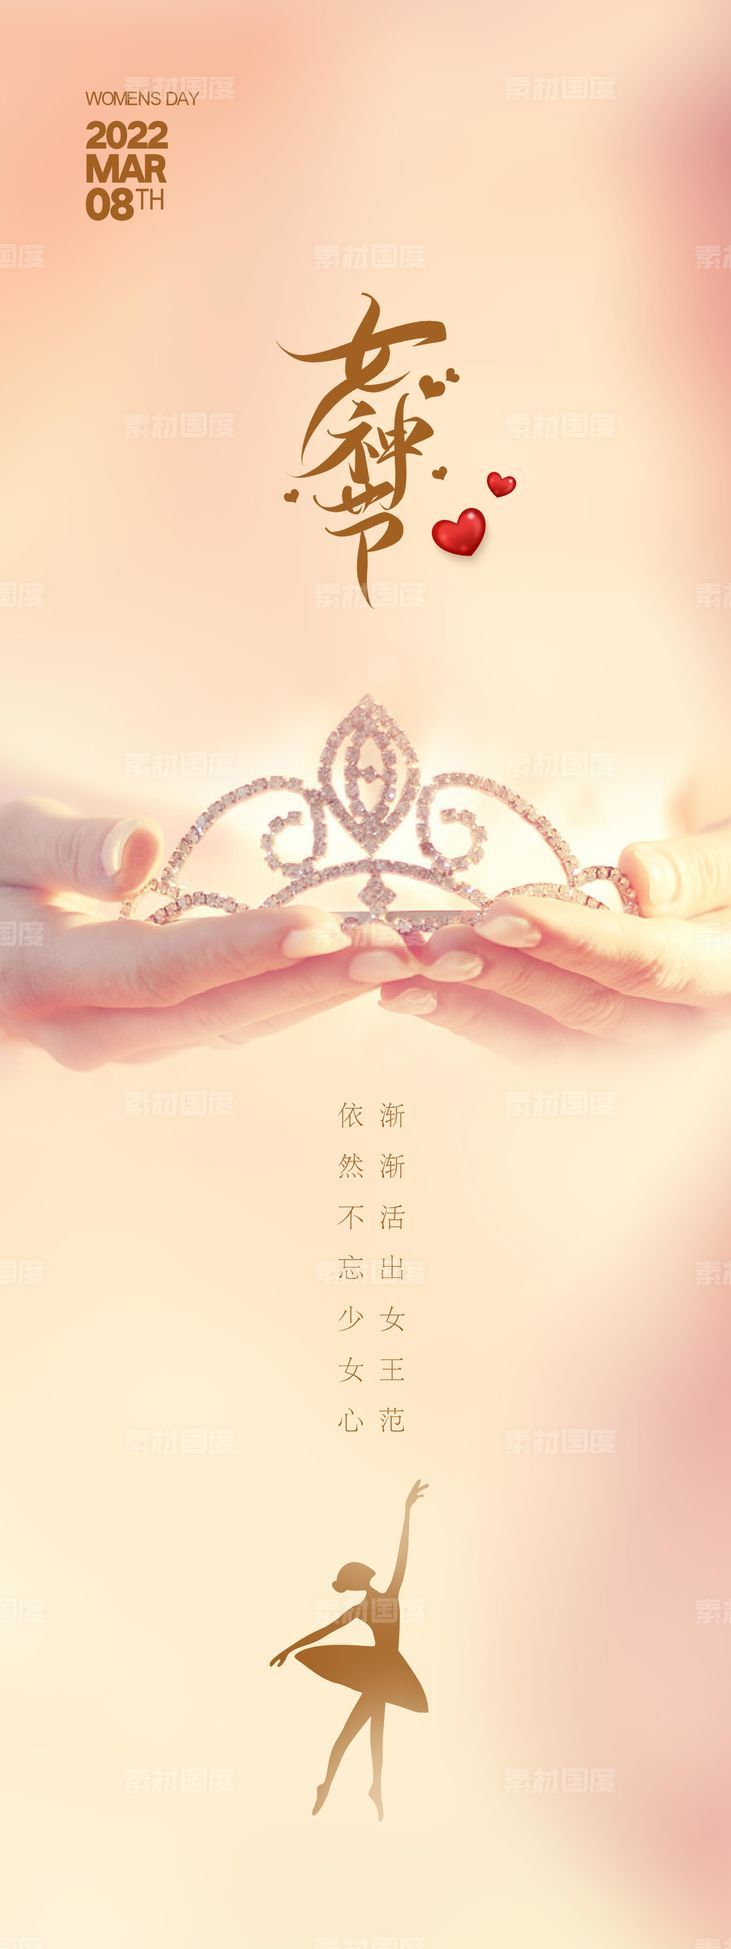 38 女王节 女神节 简约大气海报 地产 房产